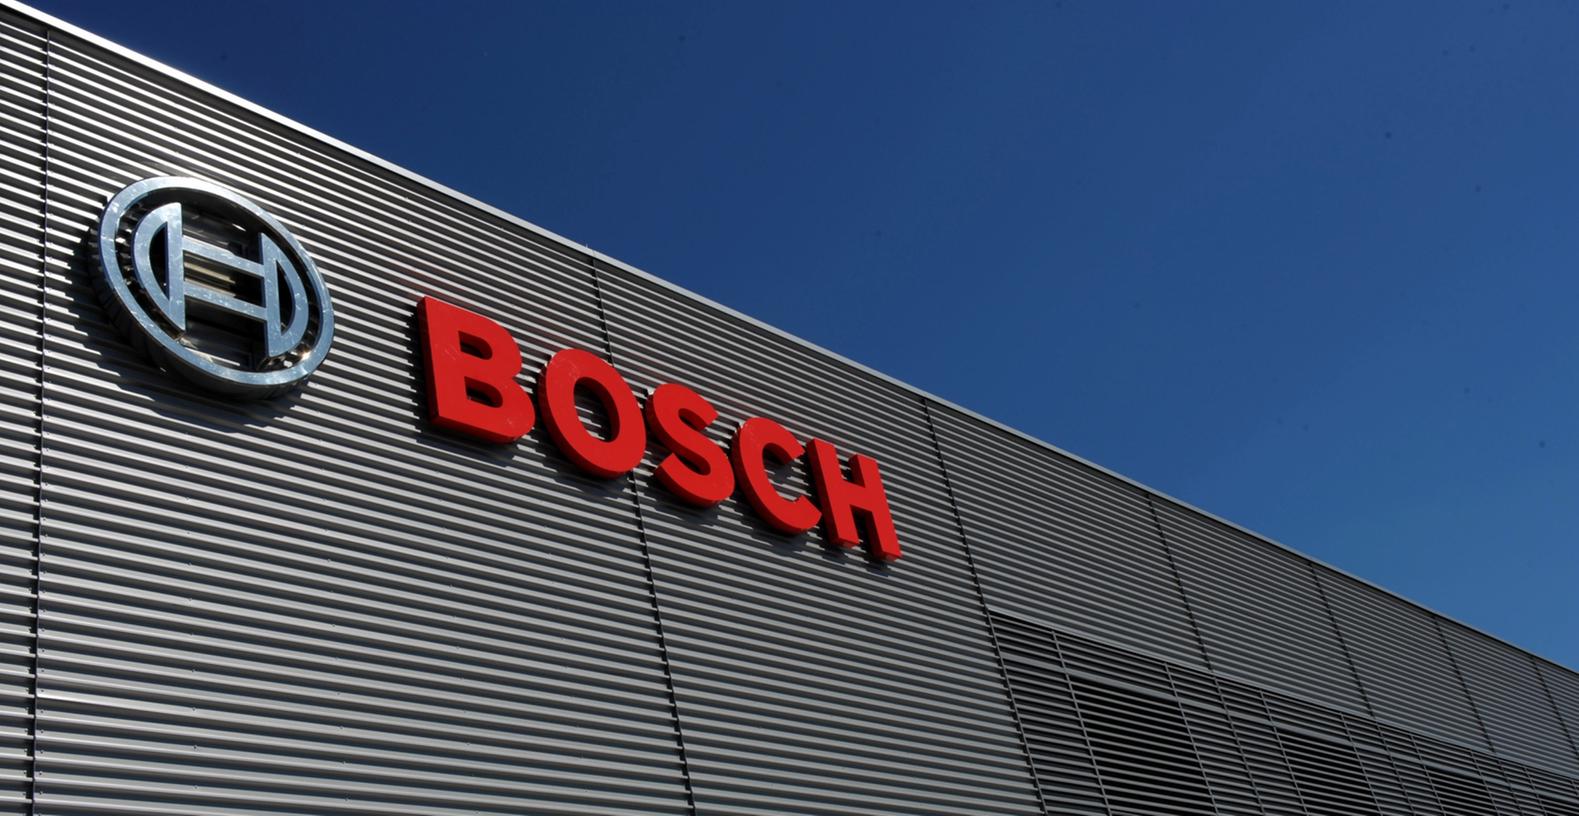 Wegen der schlechten Auftragslage aufgrund der Dieselkrise streicht der Zulieferer Bosch 200 Stellen in Bamberg.